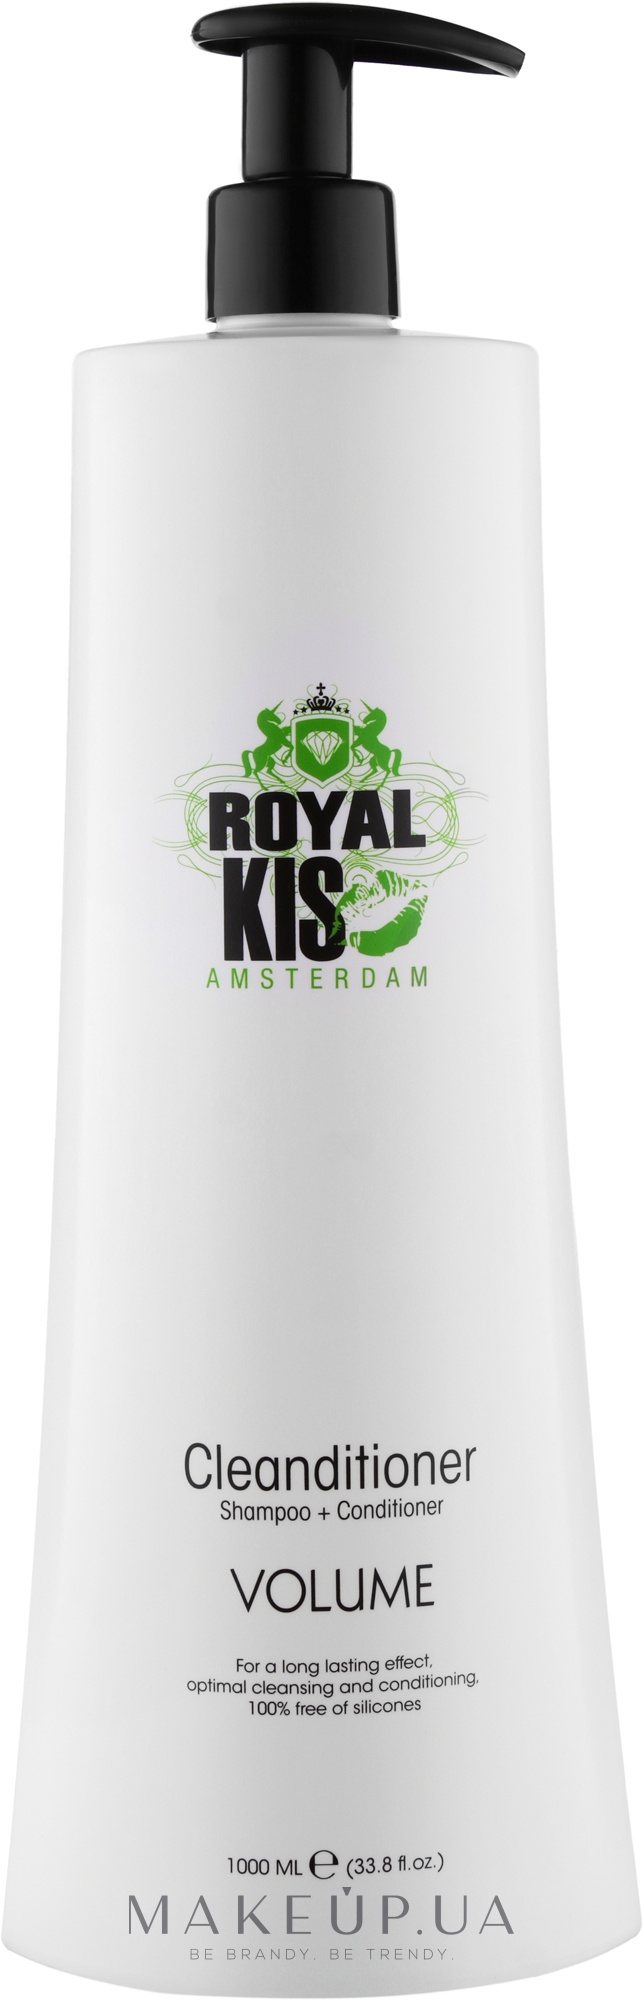 Шампунь-кондиционер для тонких волос - Kis Royal Volume Cleanditioner — фото 1000ml